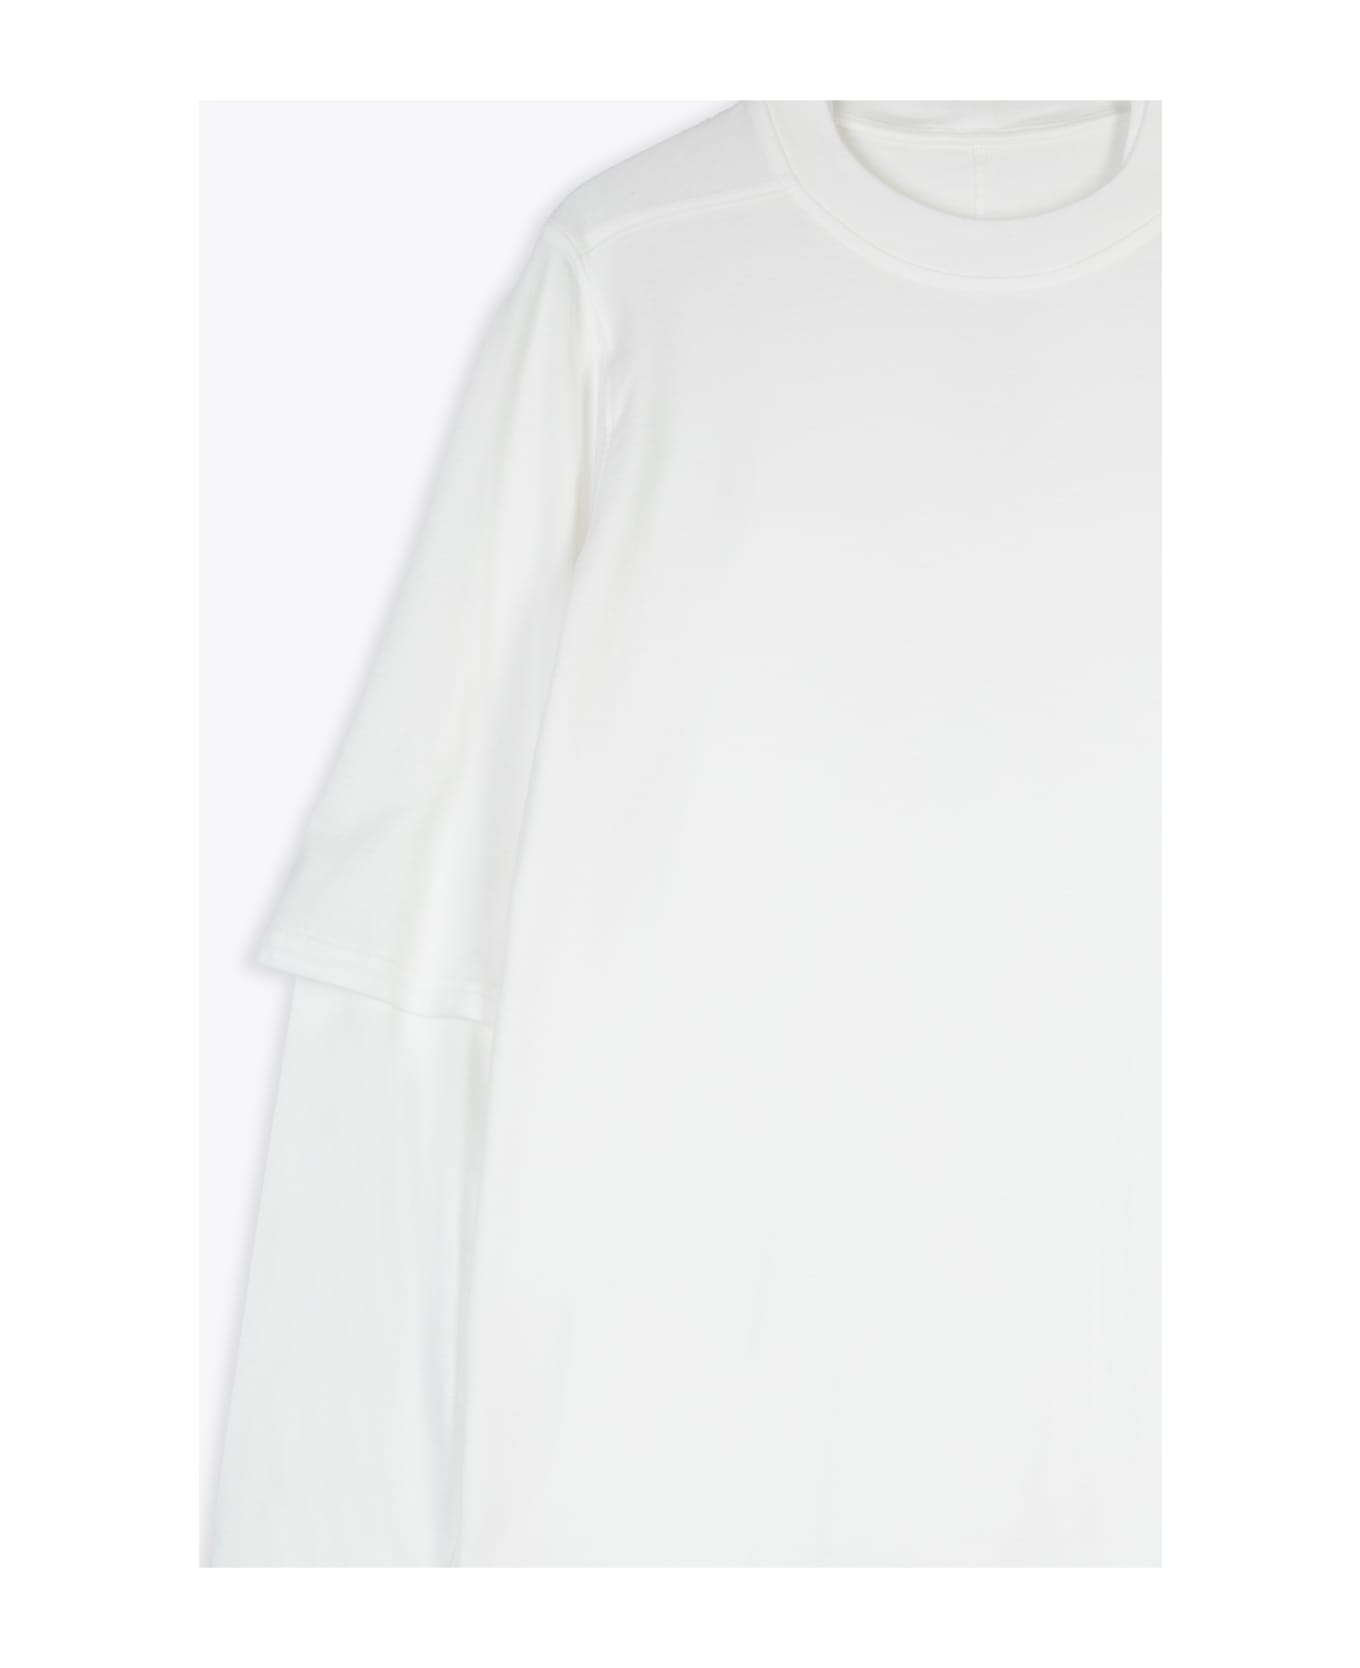 DRKSHDW Hustler T White Cotton Layered T-shirt With Long Sleeves - Hustler T - Latte